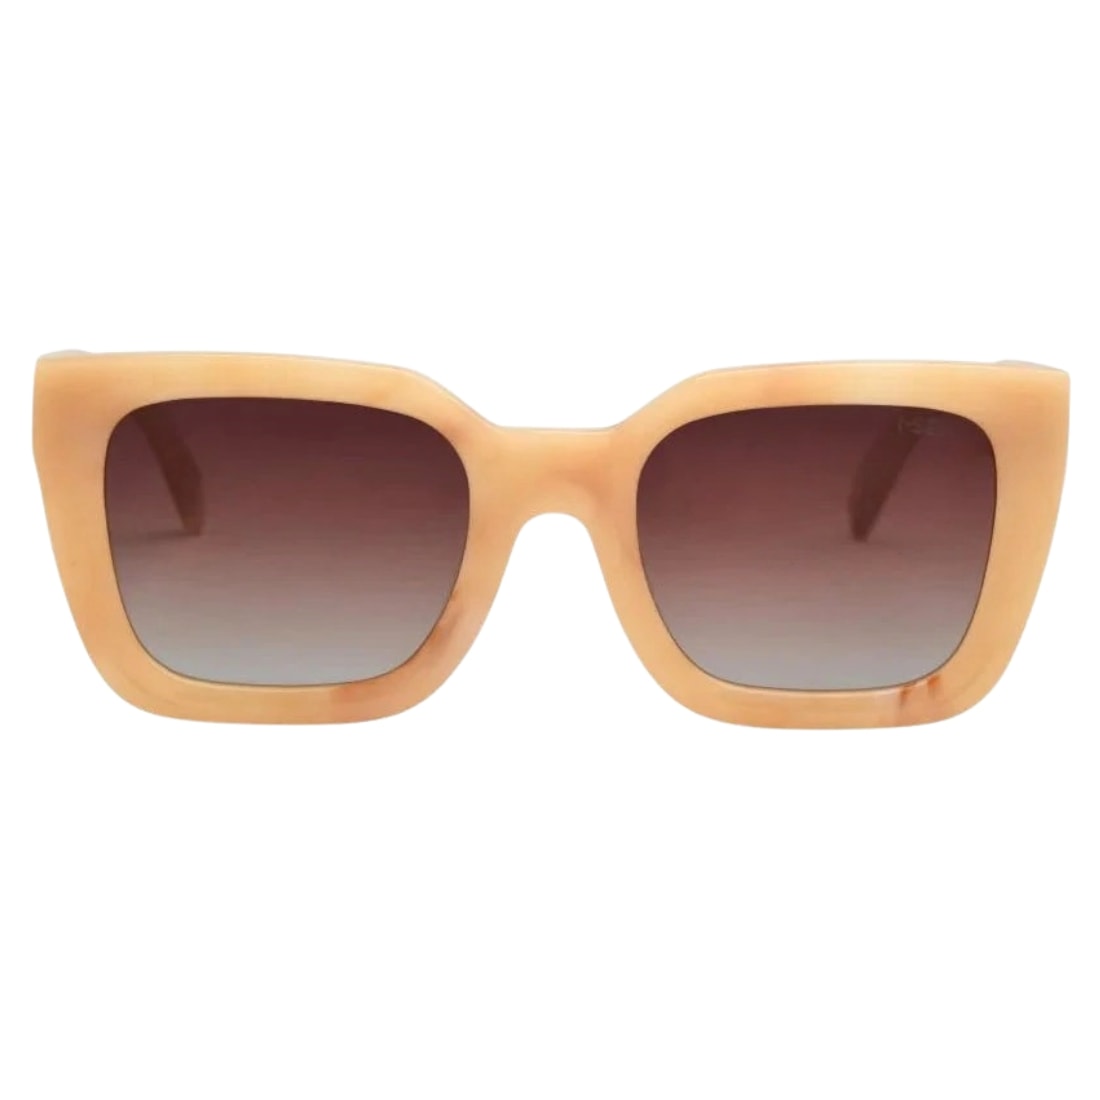 I-Sea Alden Sunglasses - Dolce De Leche/Tan Gradient Polarised